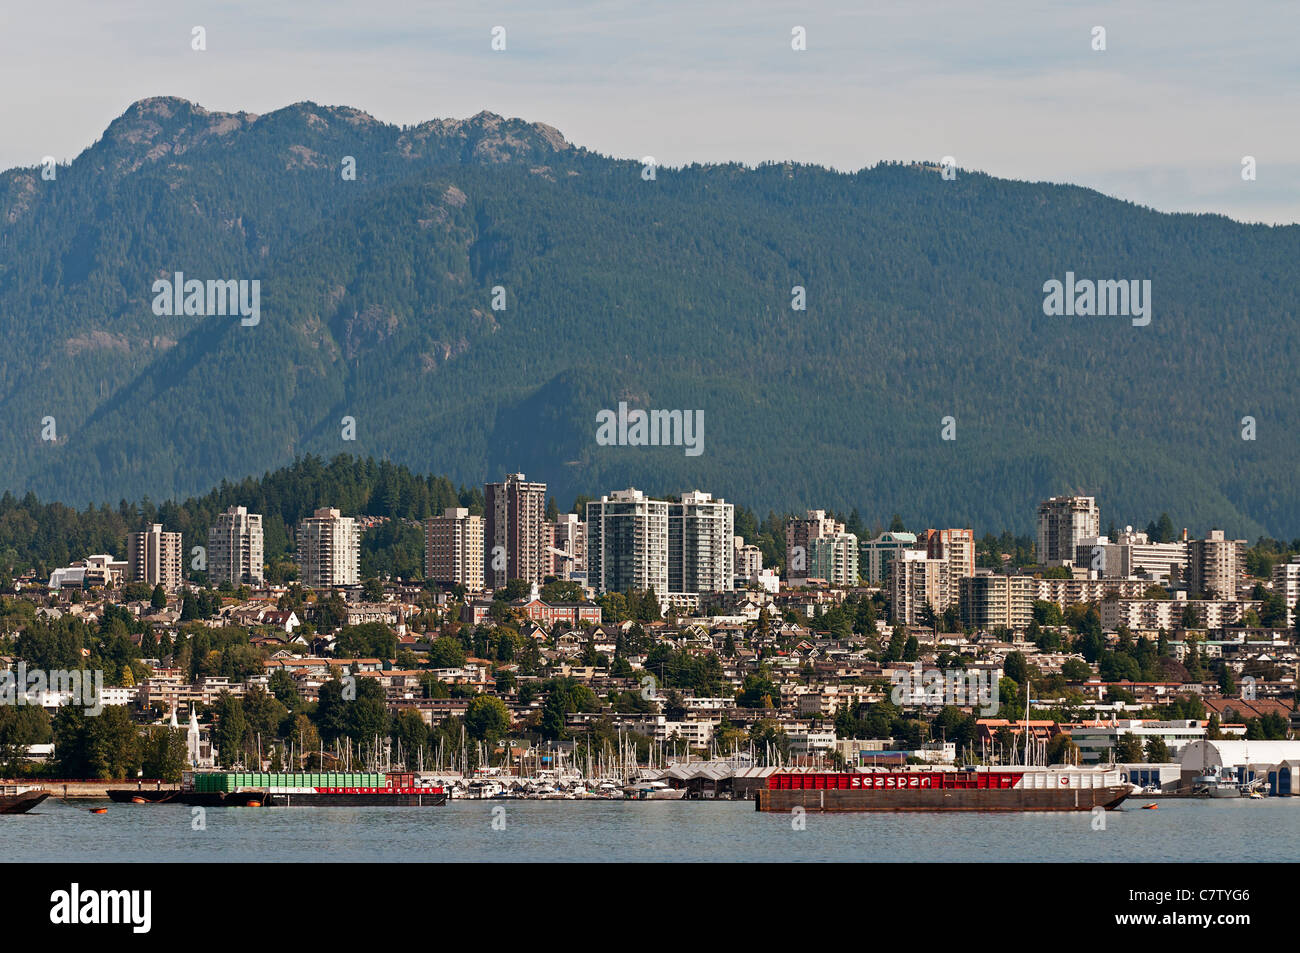 Ein Blick auf die unteren Lonsdale-Bereich von North Vancouver, BC, Canada.The gezeigt North Shore Mountains bilden eine malerische Kulisse. Stockfoto